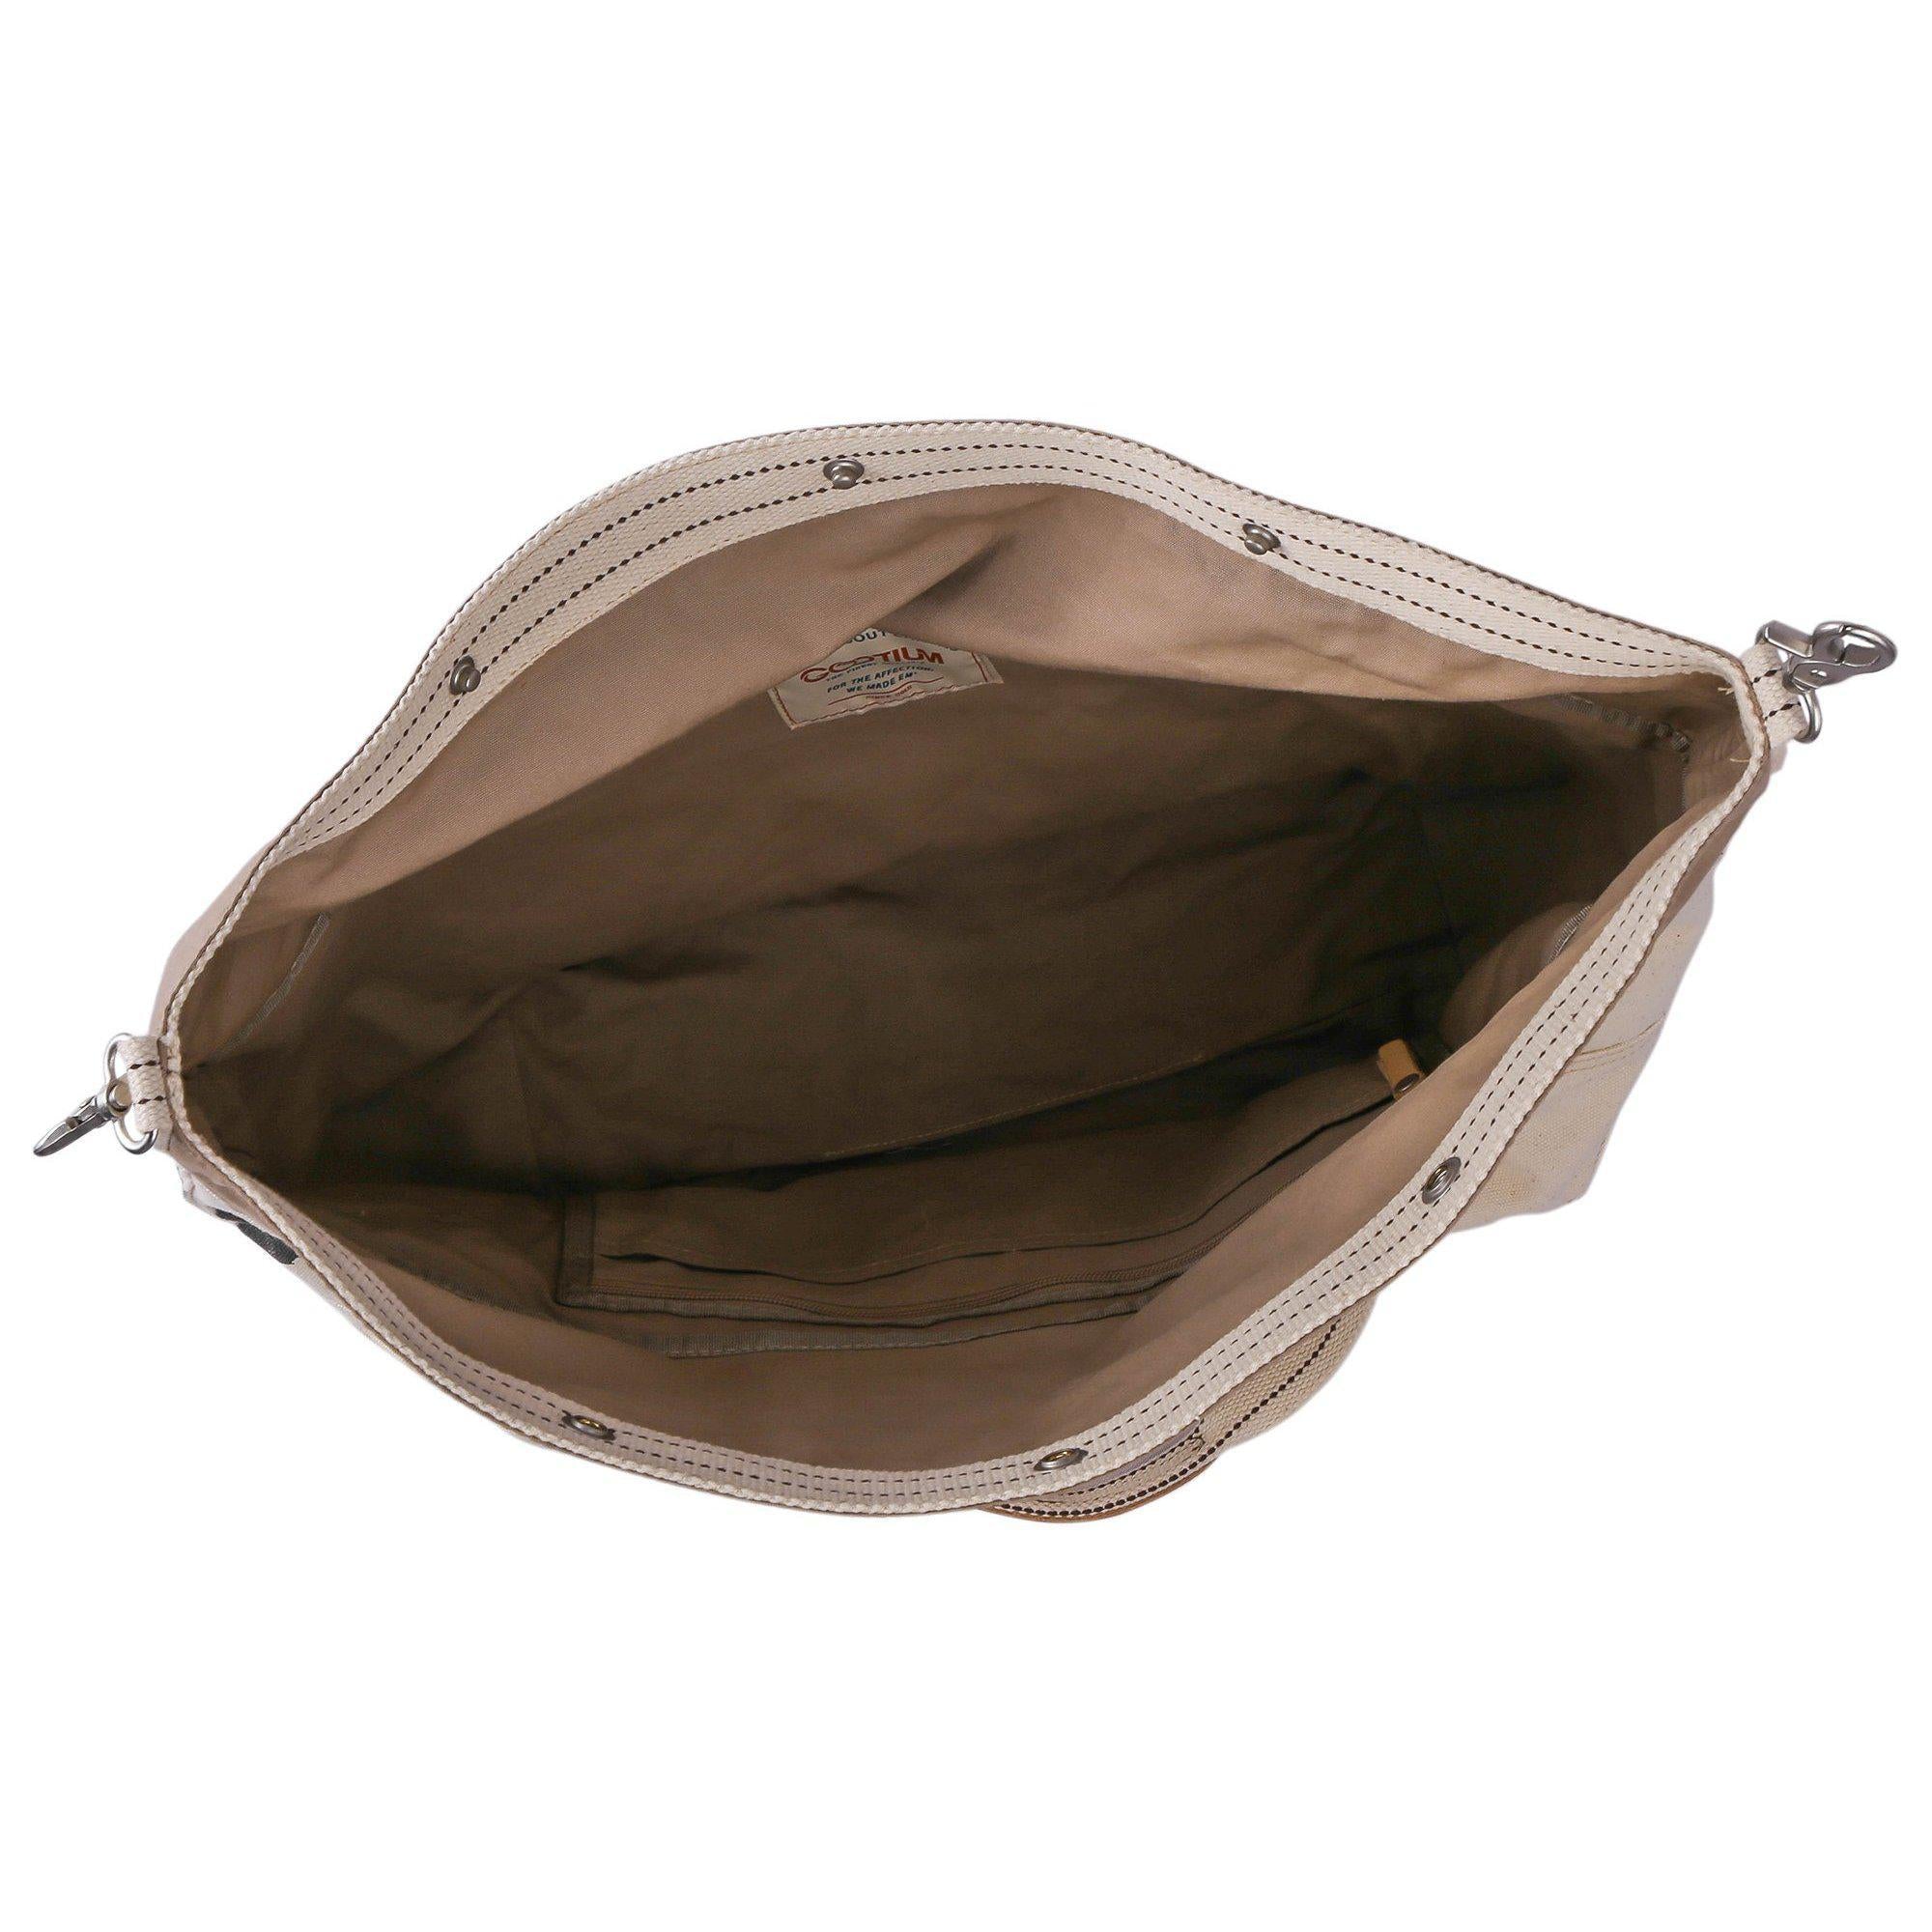 Gootium REBELS Tote - Canvas Convenient Bag #90302WT